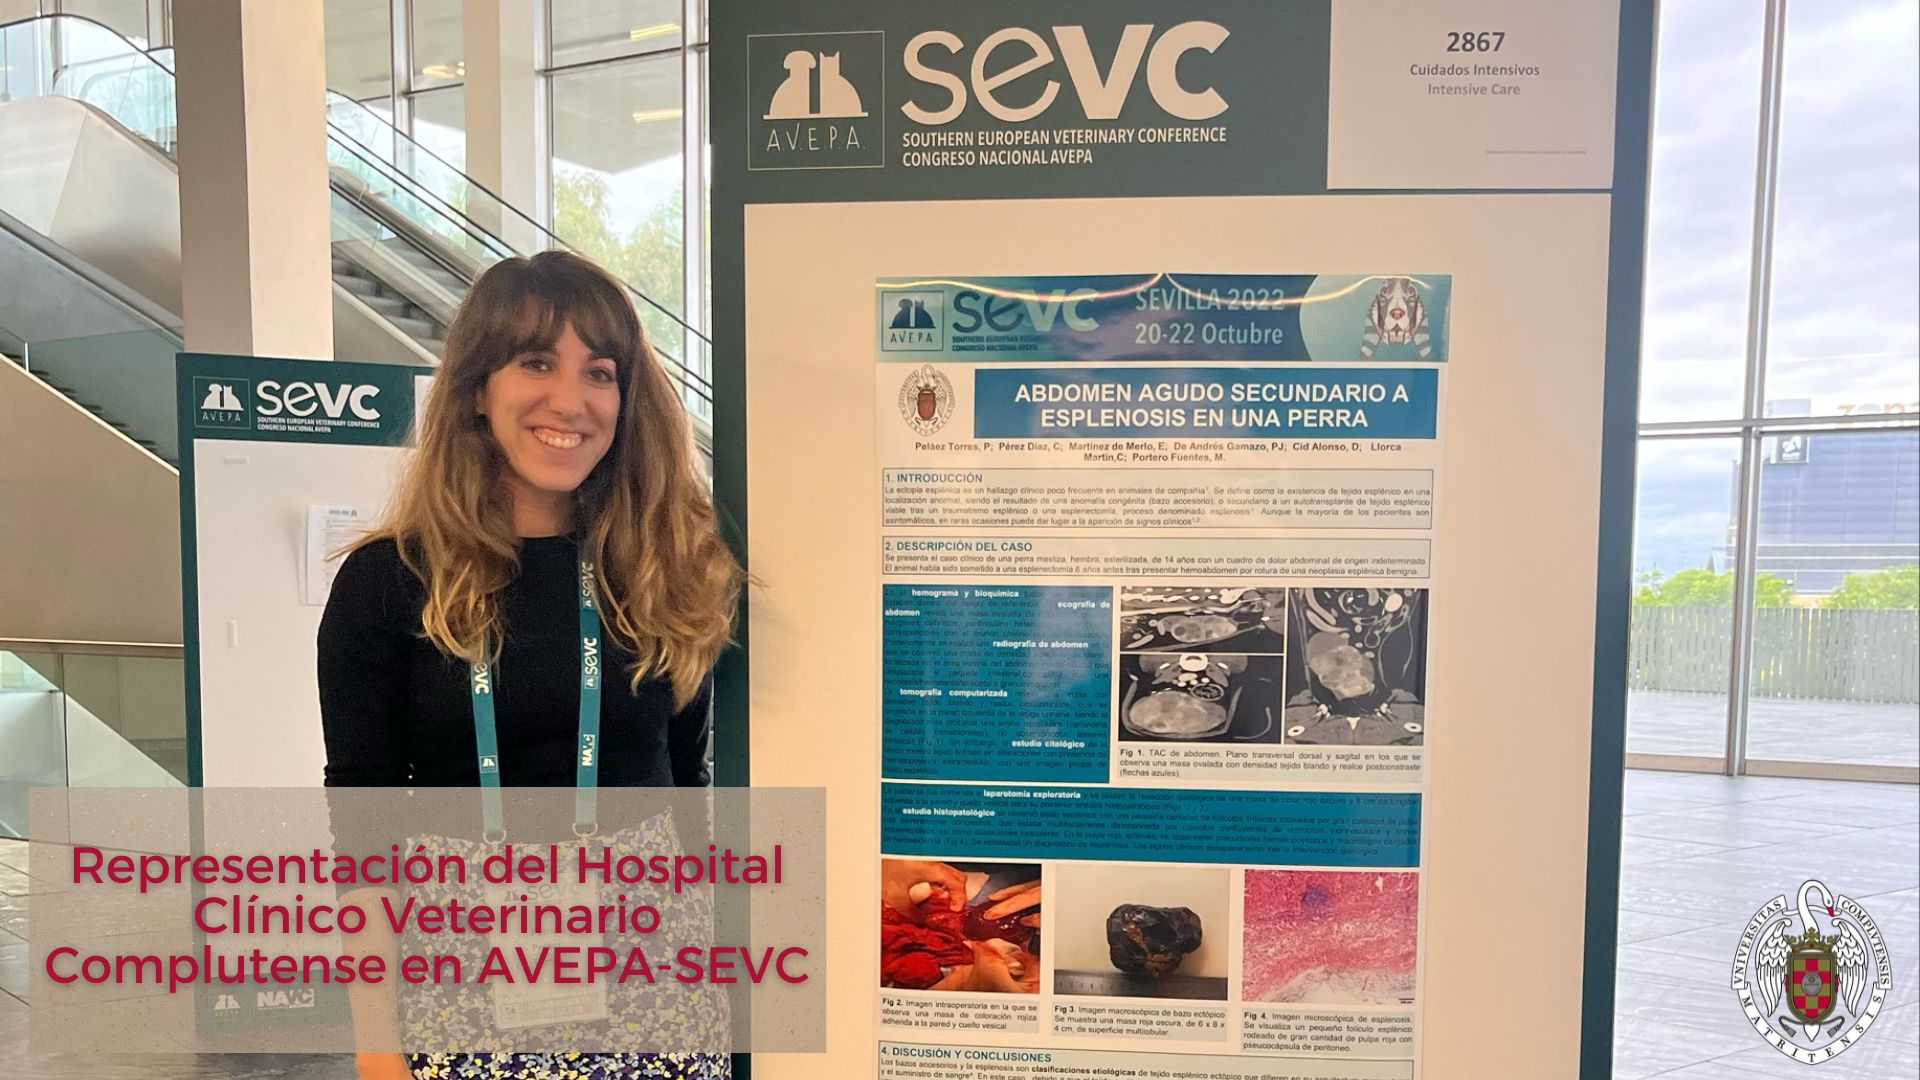 Amplia representación del Hospital Clínico Veterinario Complutense en el Congreso Nacional de AVEPA-SEVC